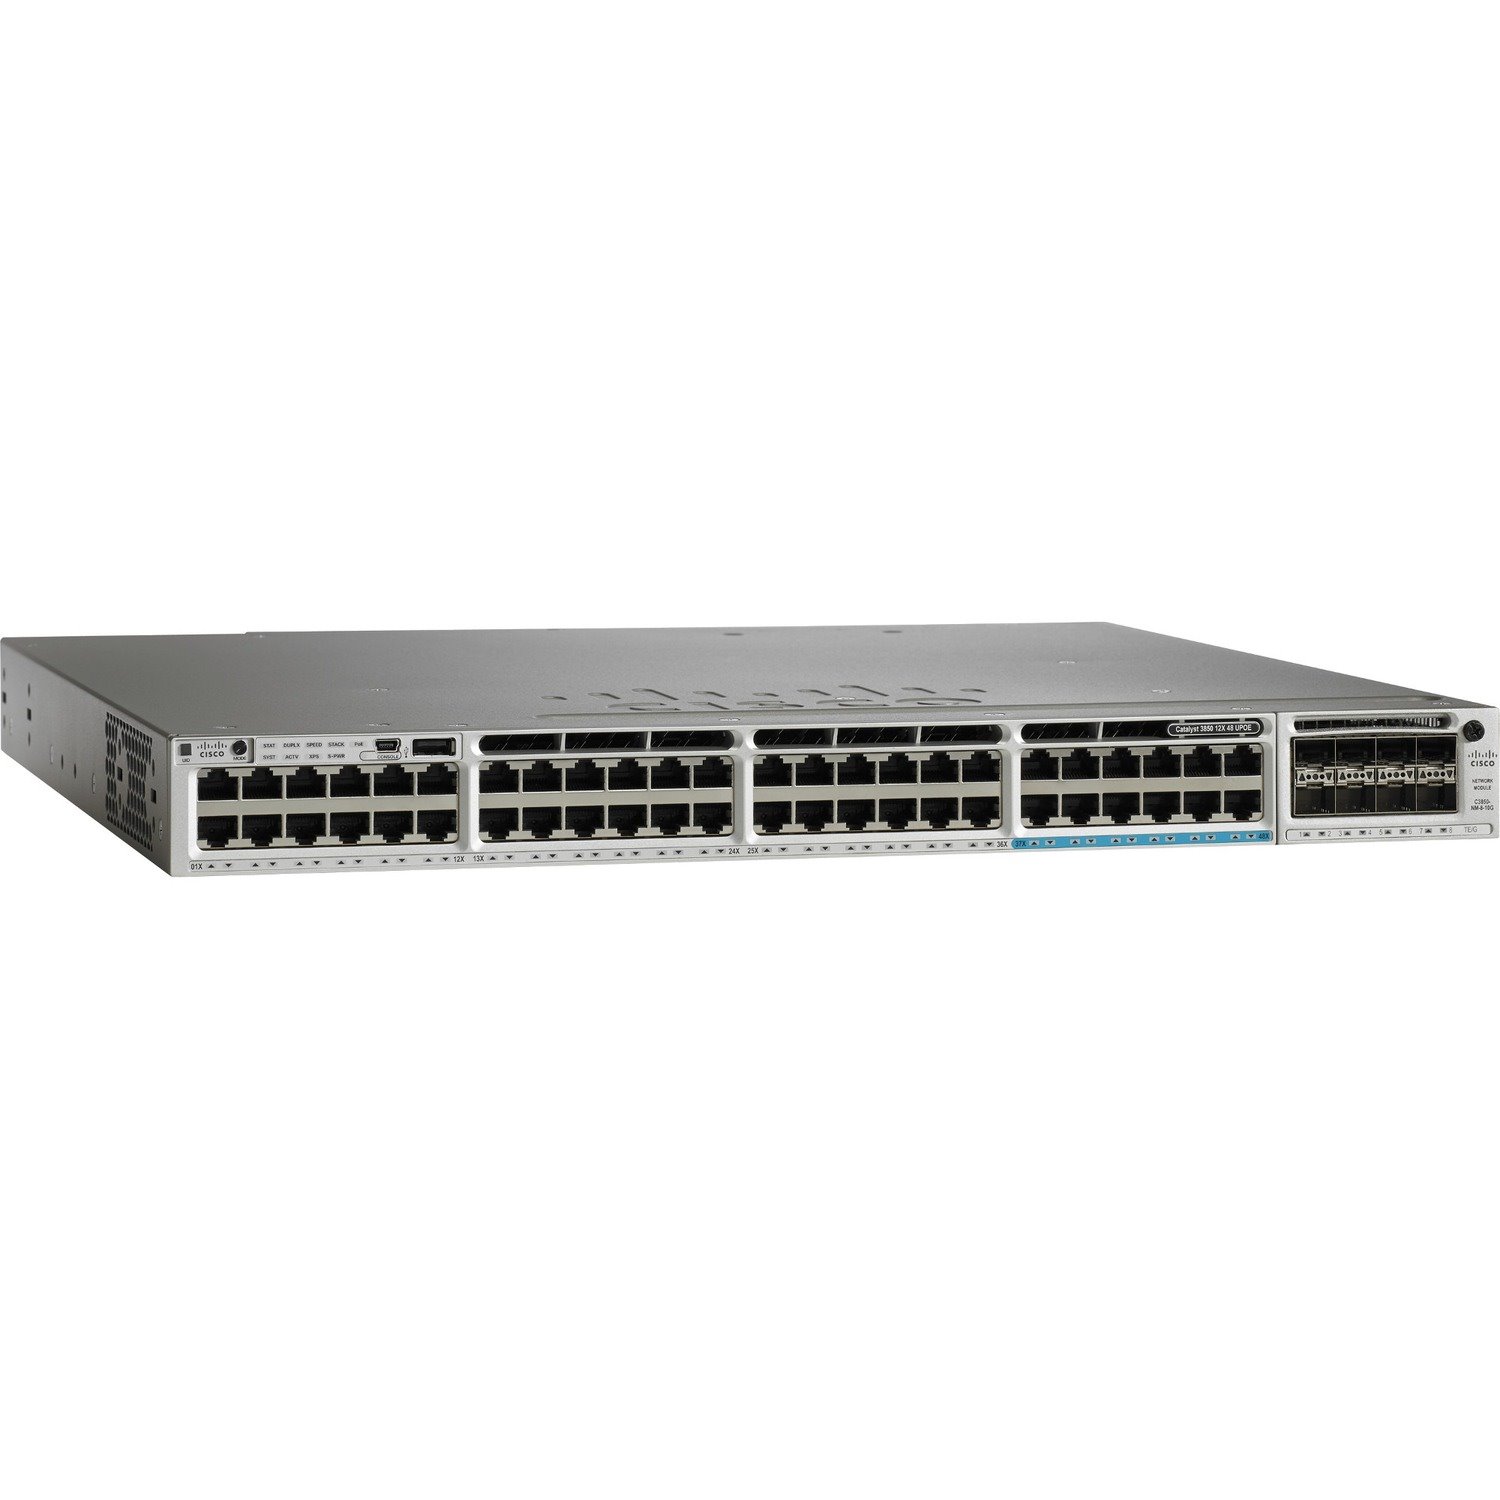 Cisco Catalyst 3850 C3850-12X48U 48 Ports Manageable Ethernet Switch - Gigabit Ethernet - 10/100/1000Base-T - Refurbished